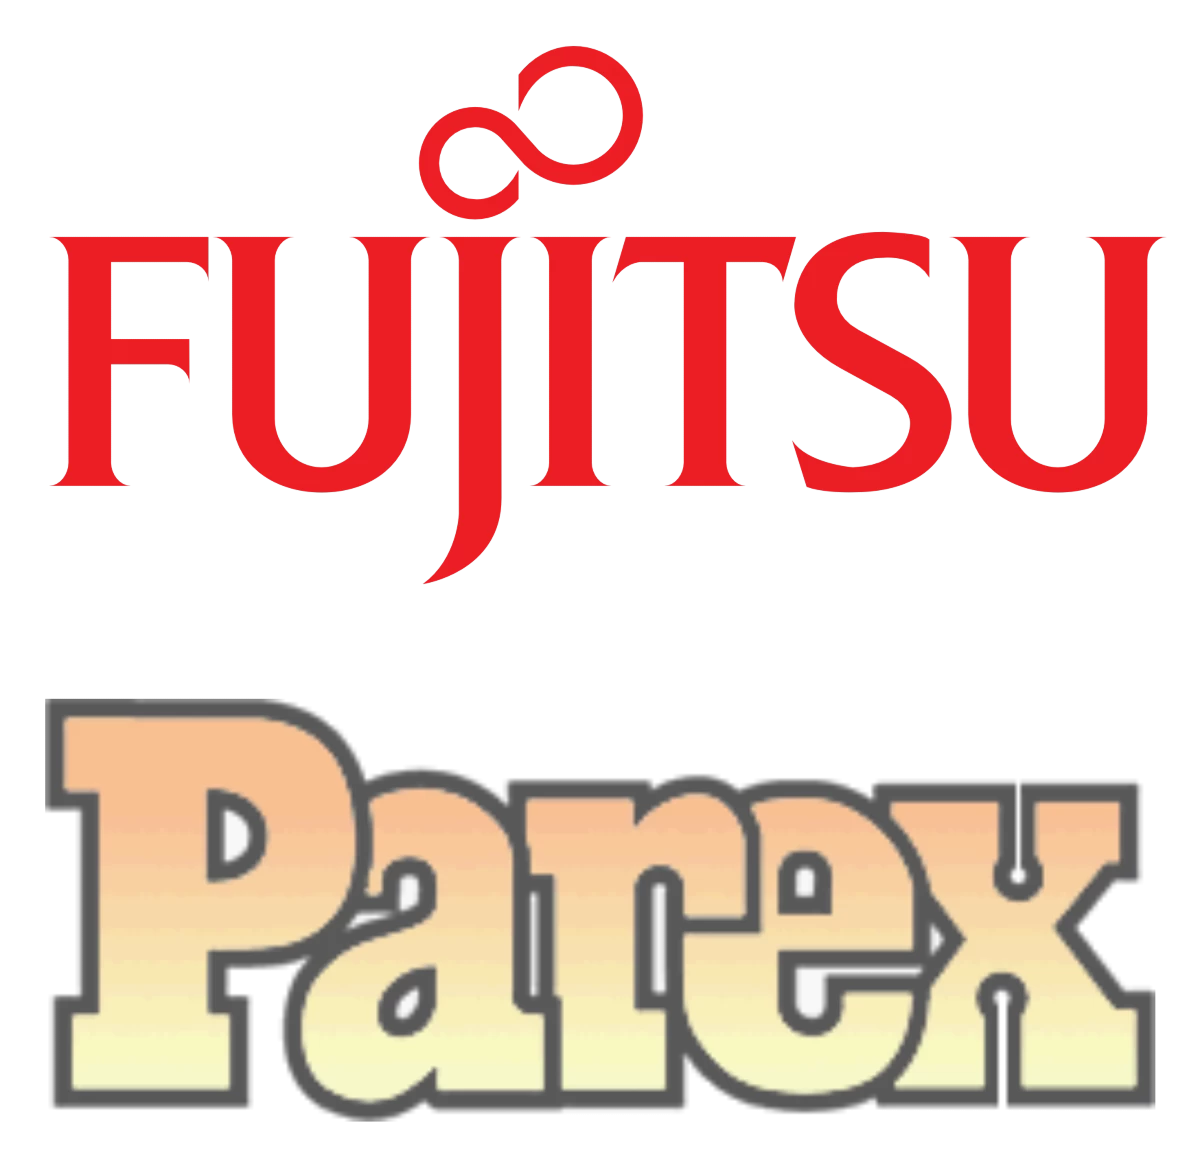 Fujitsu Parex